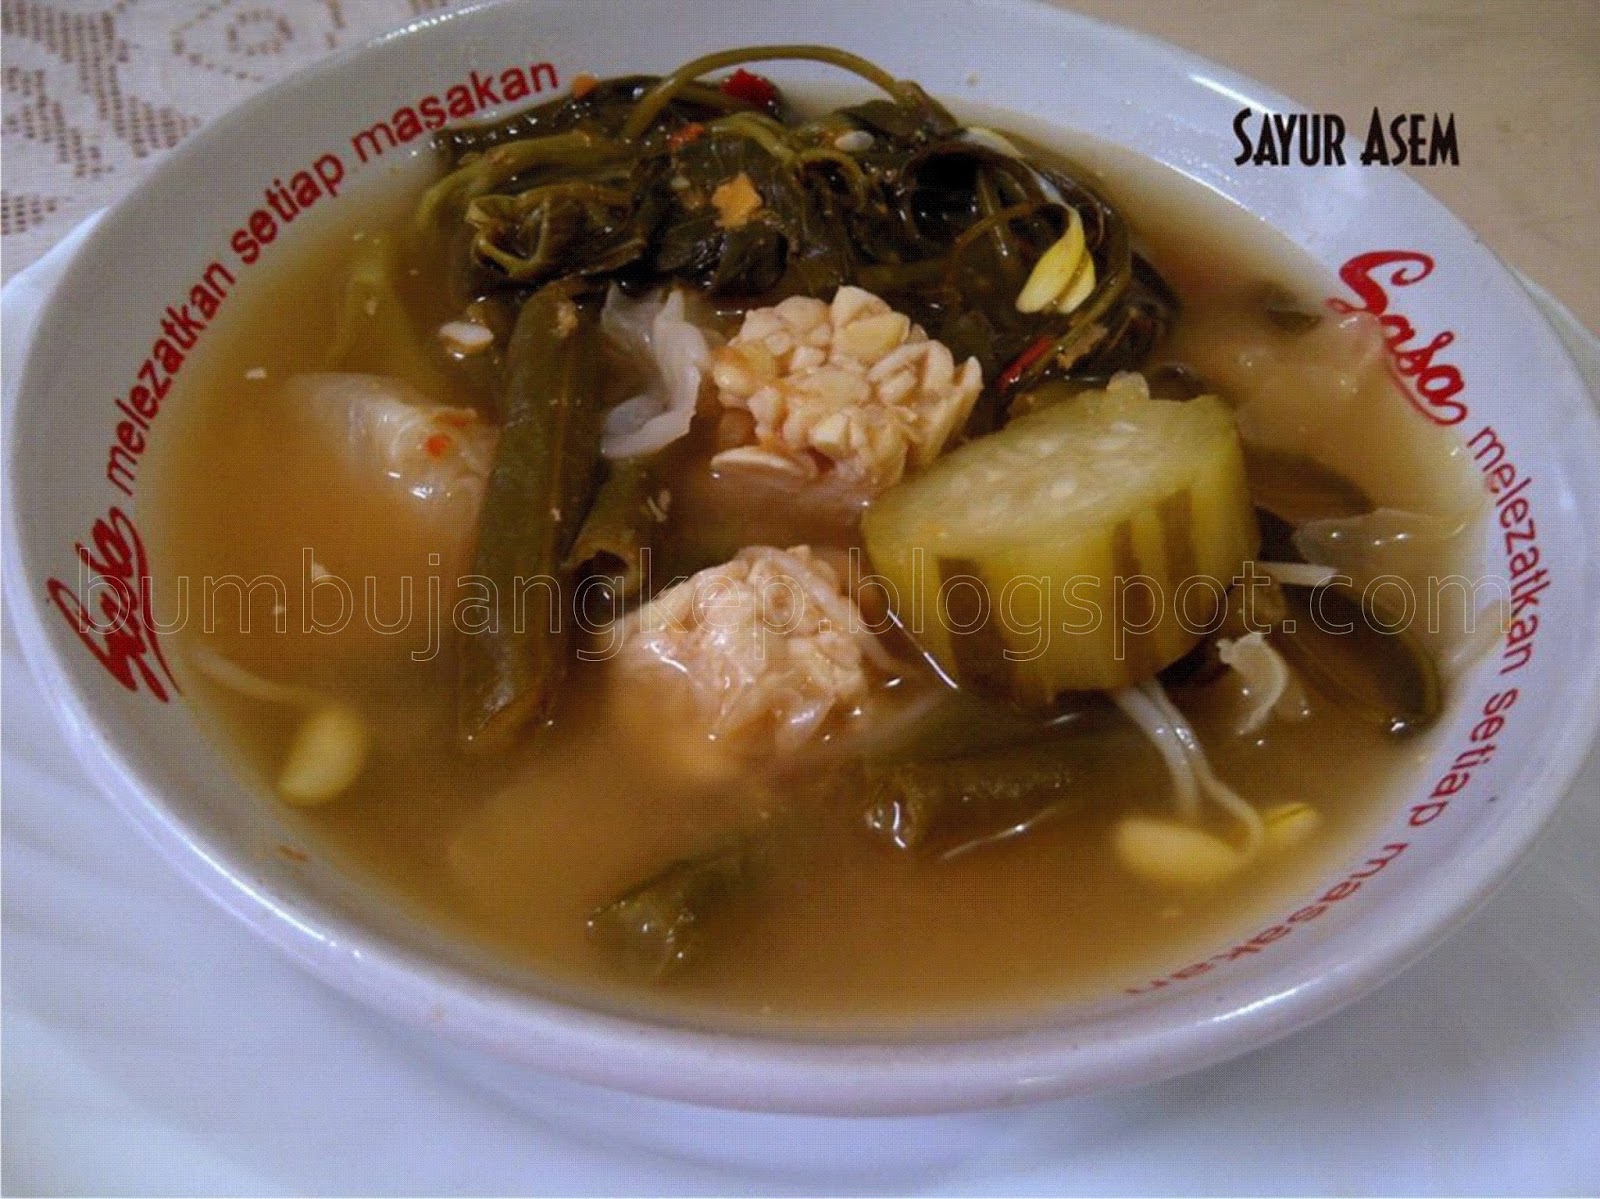 Photo Sayur Asem - Vegetables in Tamarind Soup from Pekanbaru City